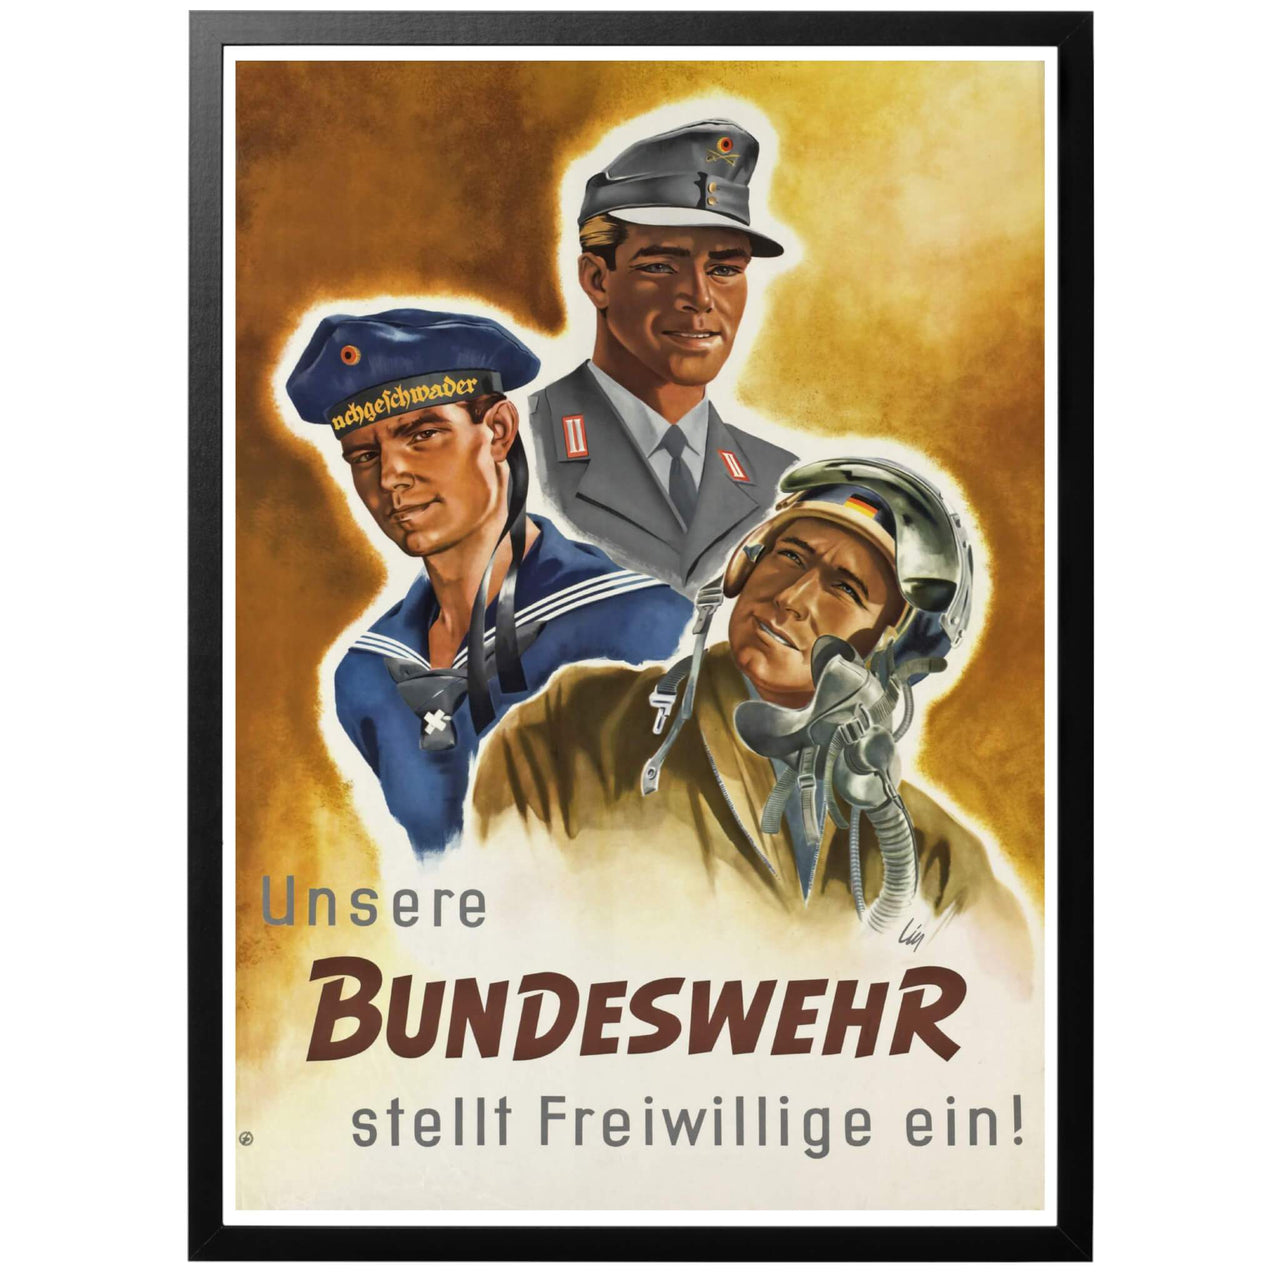 Vårt Bundeswehr tar emot frivillga! Poster